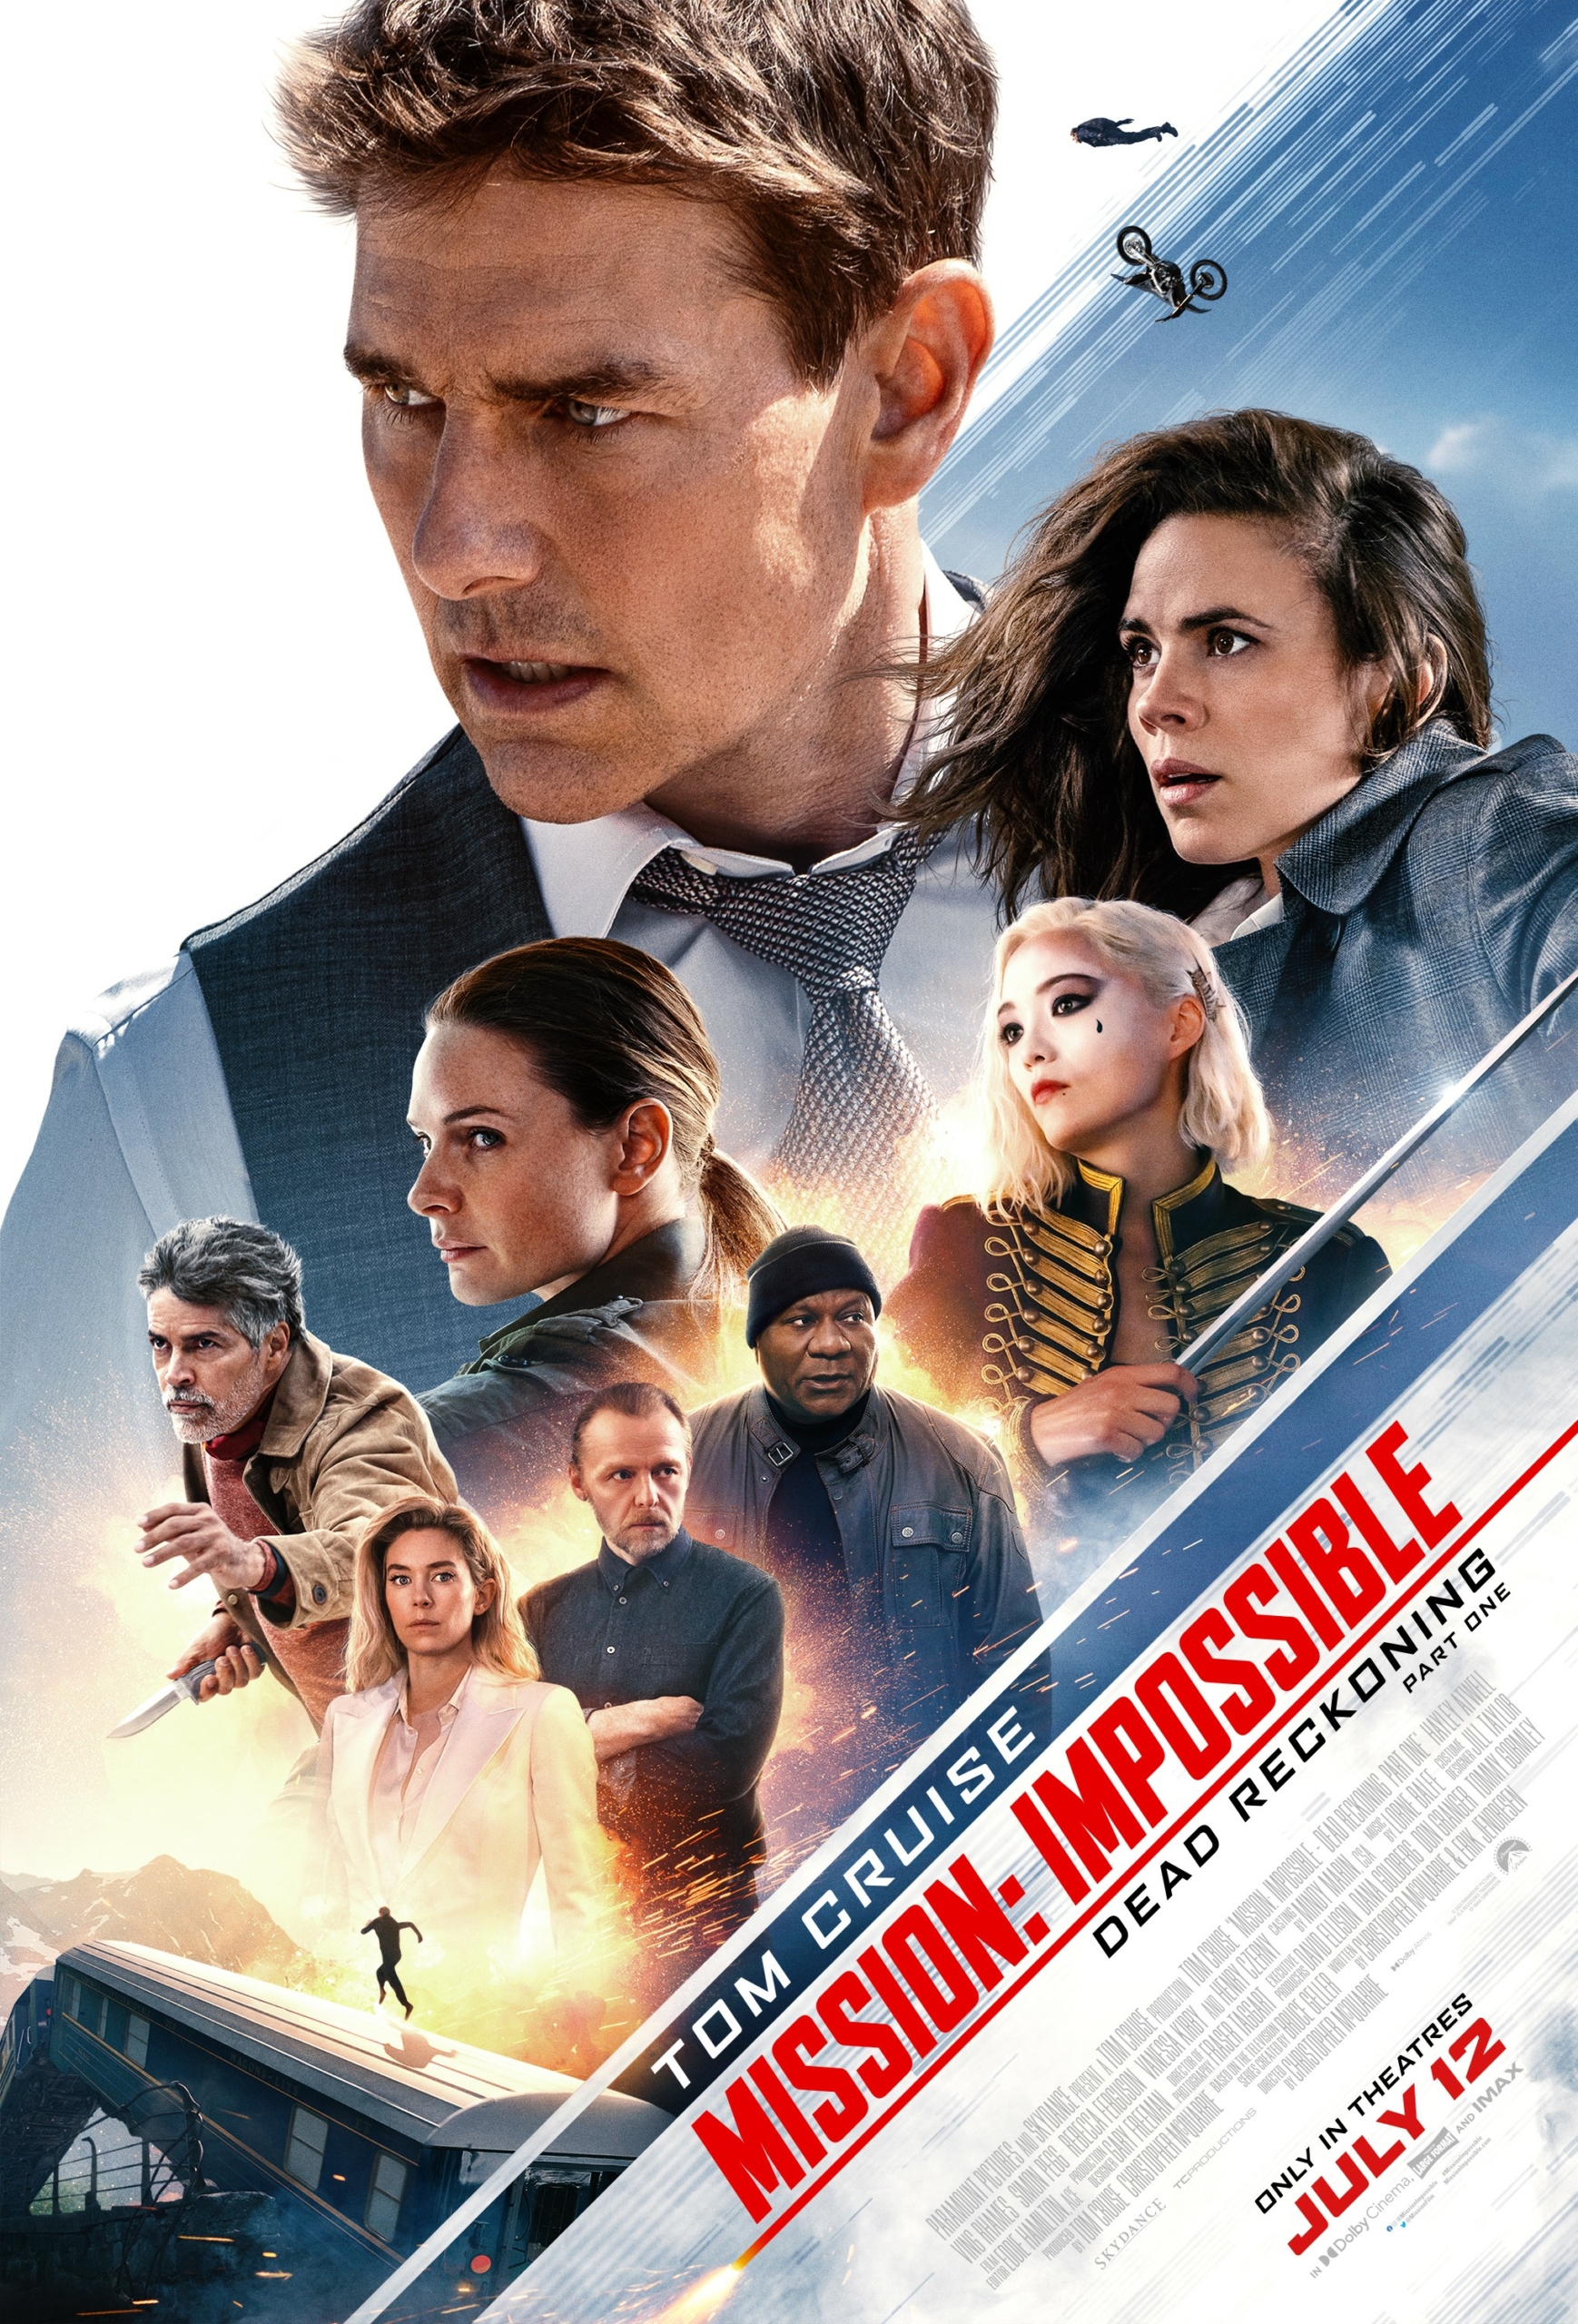 Bích chương của bộ phim “Mission: Impossible – Dead Reckoning Part One” (Nhiệm vụ bất khả thi – Nghiệp báo phần 1). (Ảnh: Paramount/Skydance)